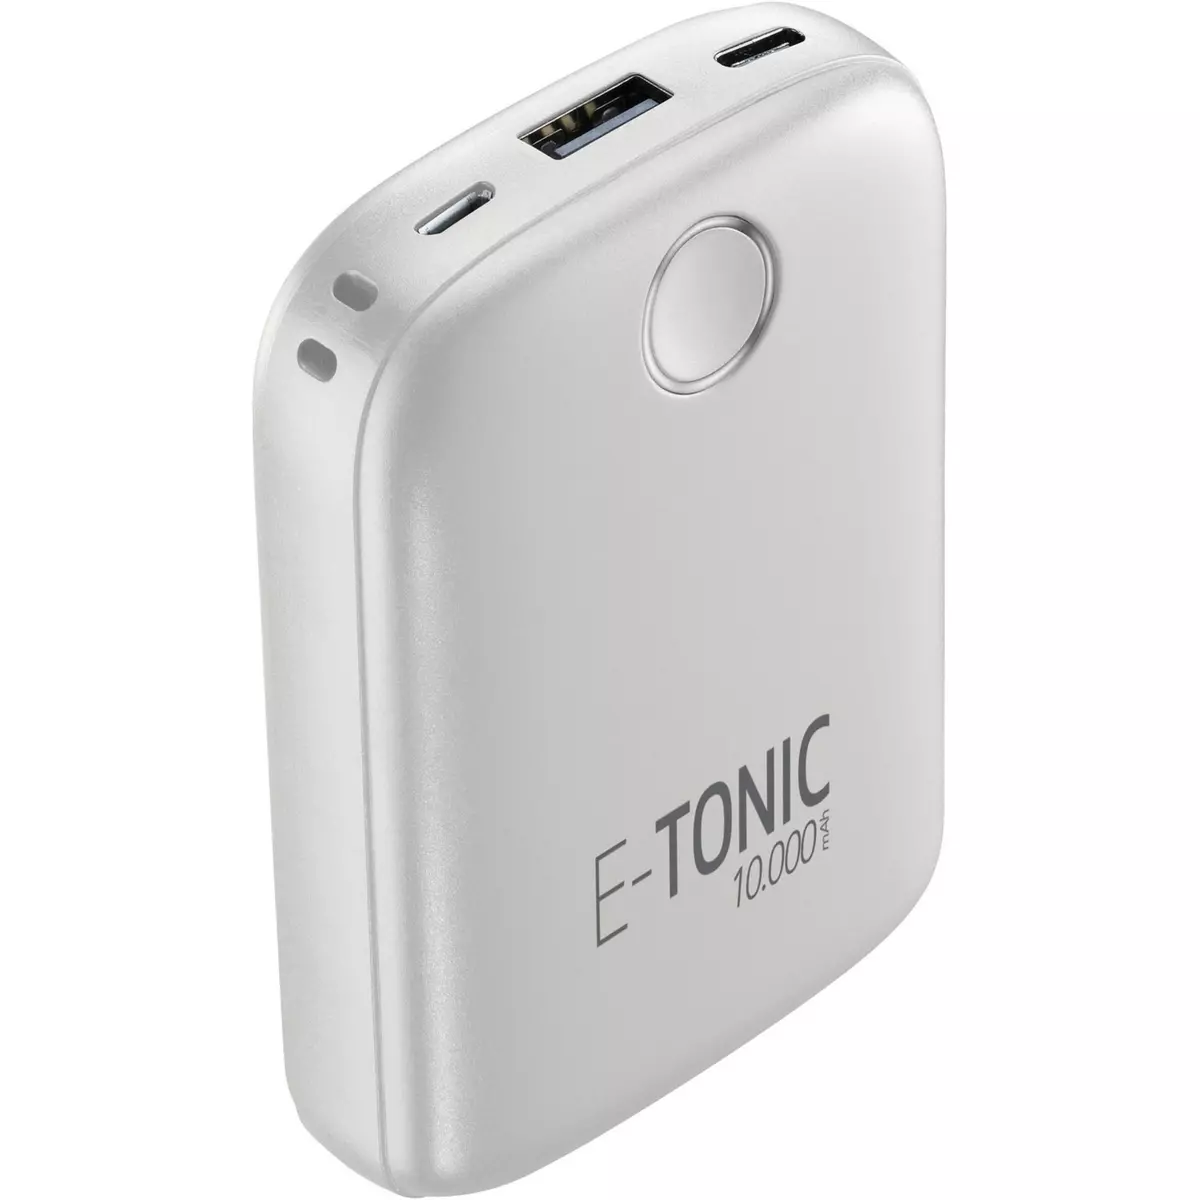 CELLULARLINE Batterie de secours E-Tonic - Blanc